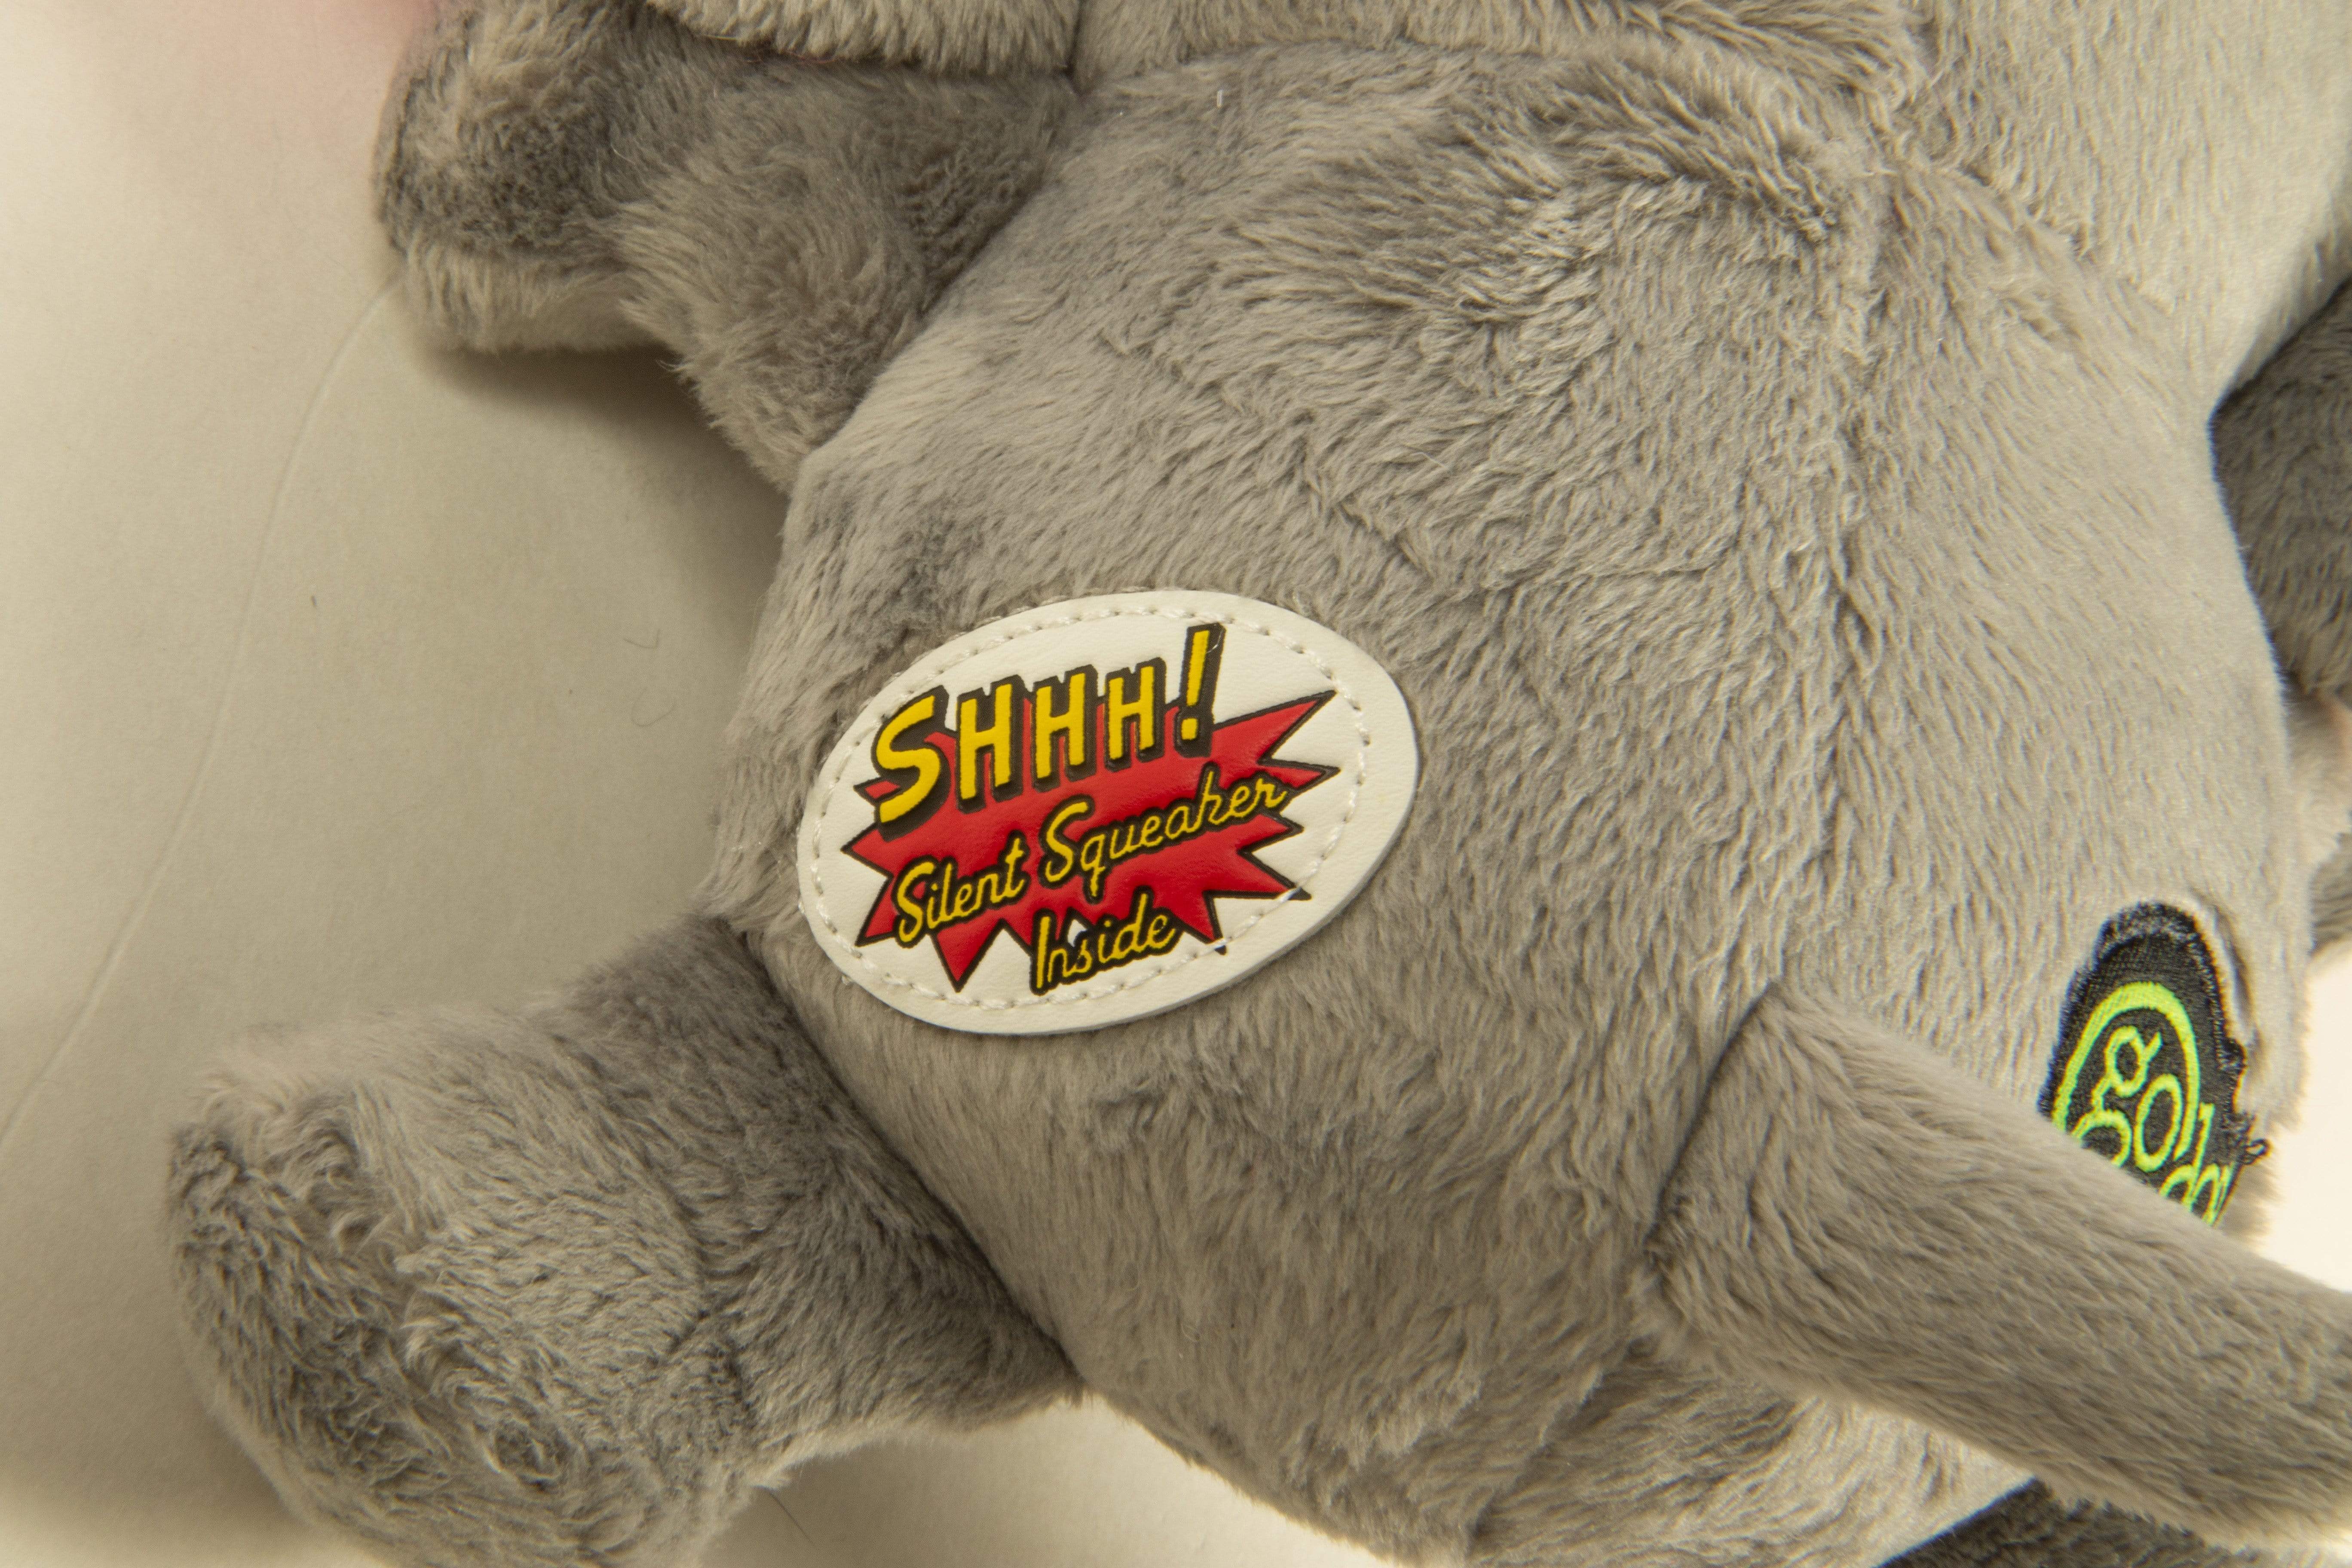 goDog Silent Squeak Crazy Hairs Elephant Dog Toy, Gray, Large